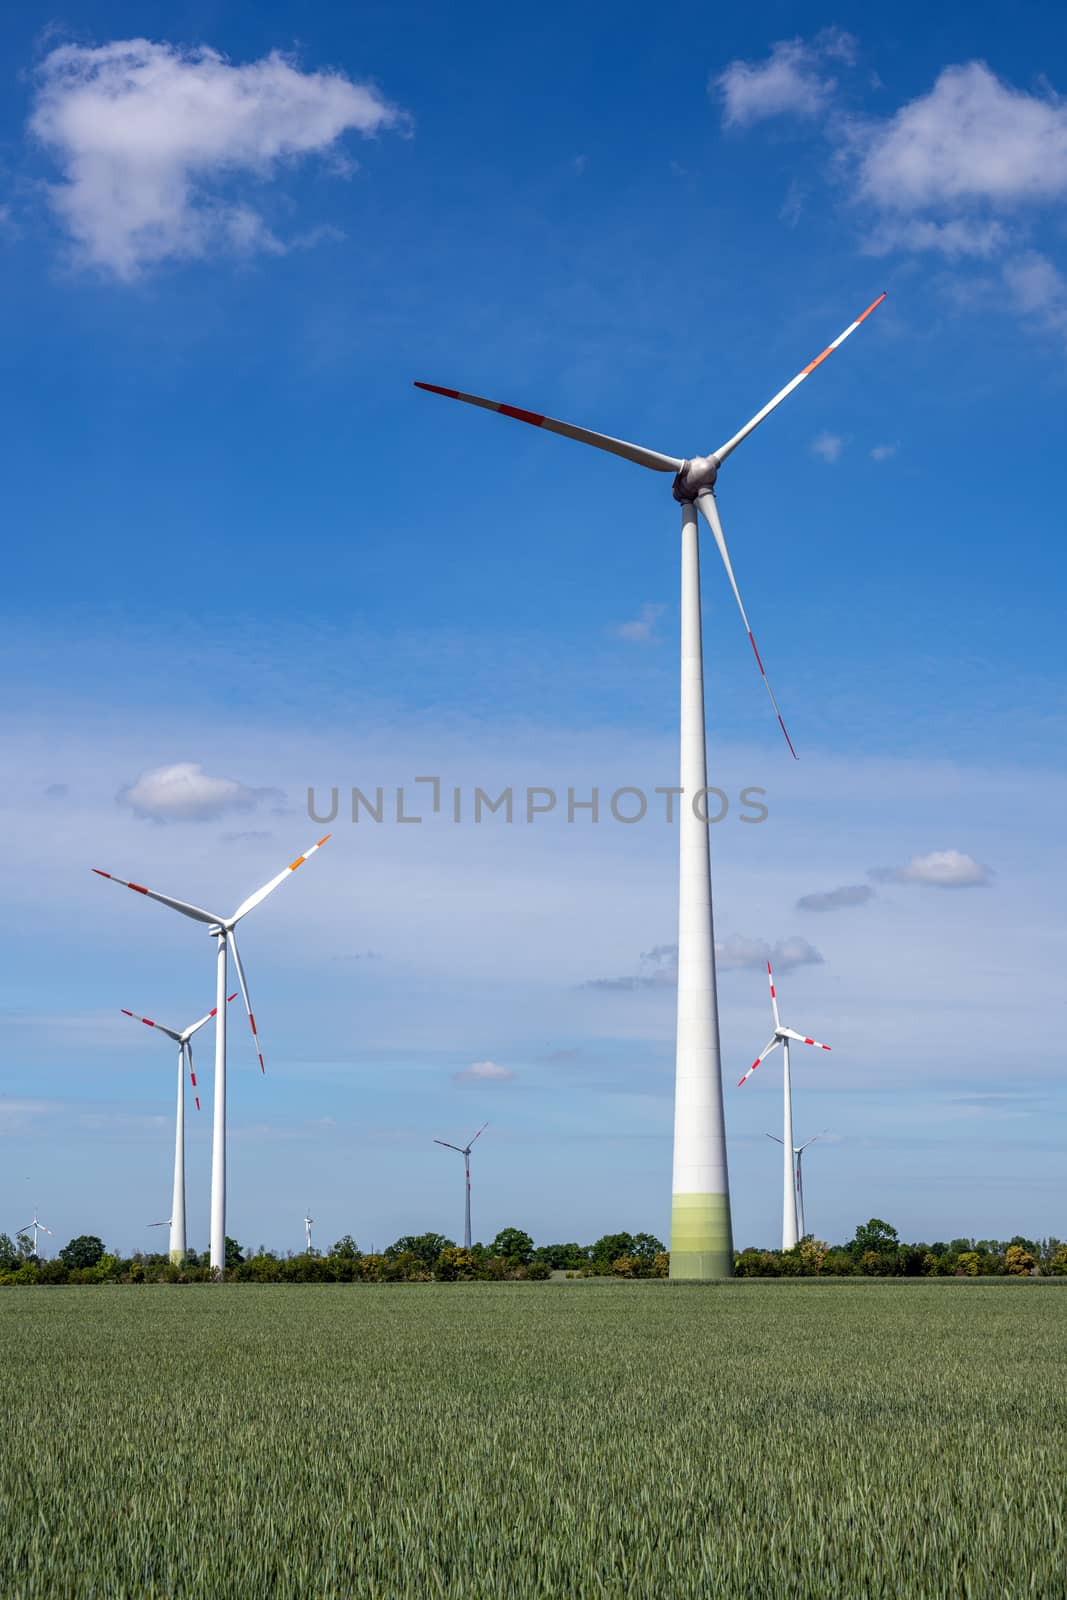 Wind turbines in a grain field by elxeneize